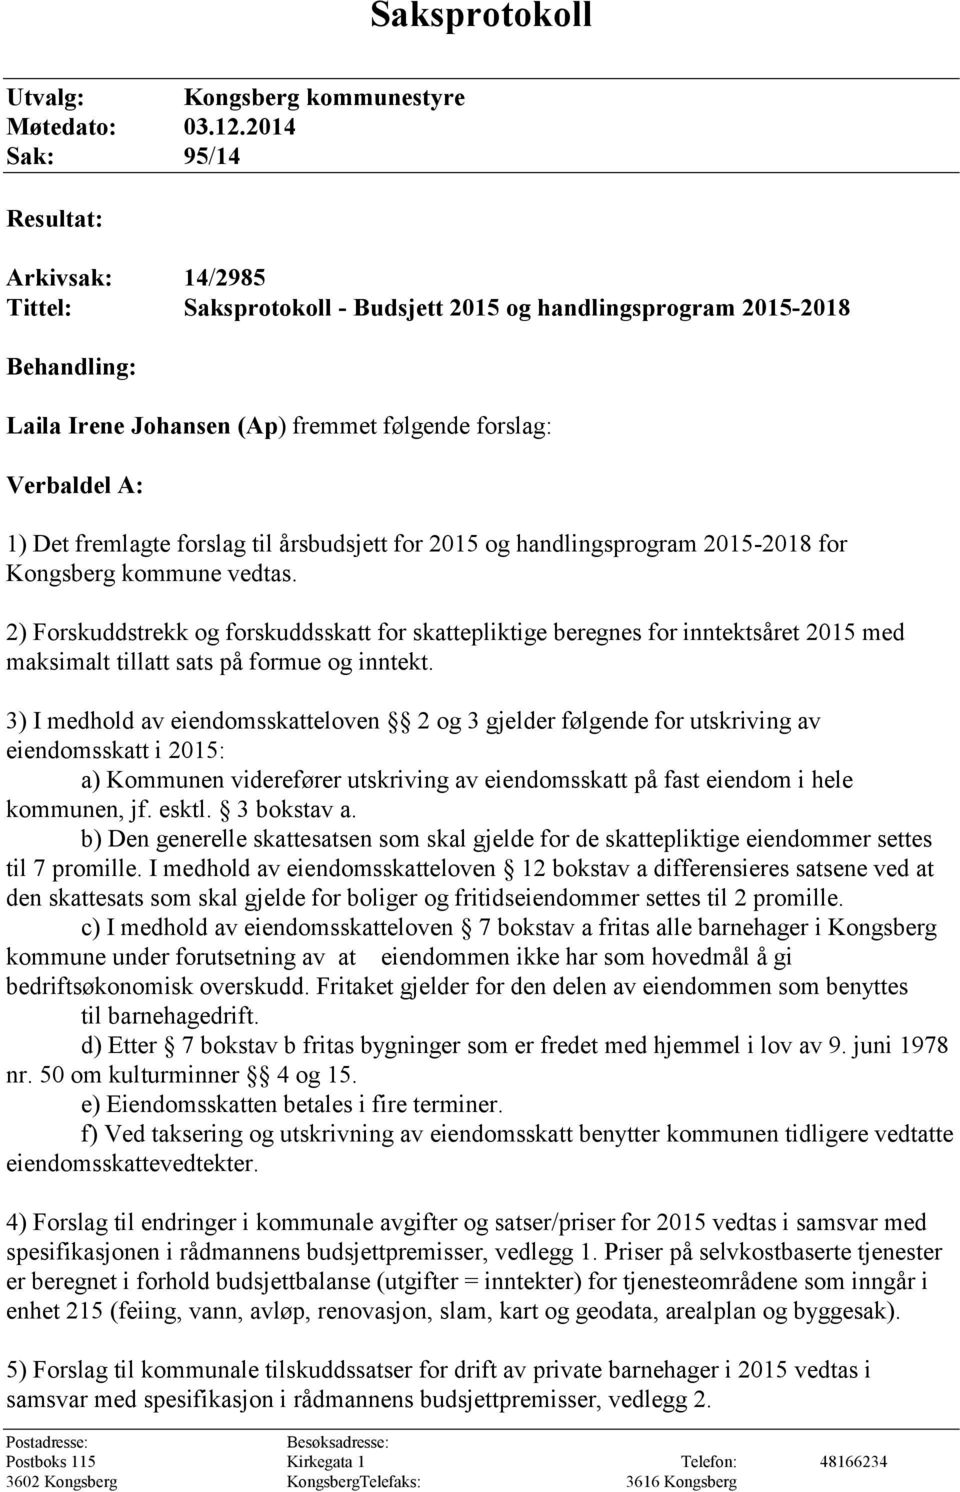 fremlagte forslag til årsbudsjett for 2015 og handlingsprogram 2015-2018 for Kongsberg kommune vedtas.